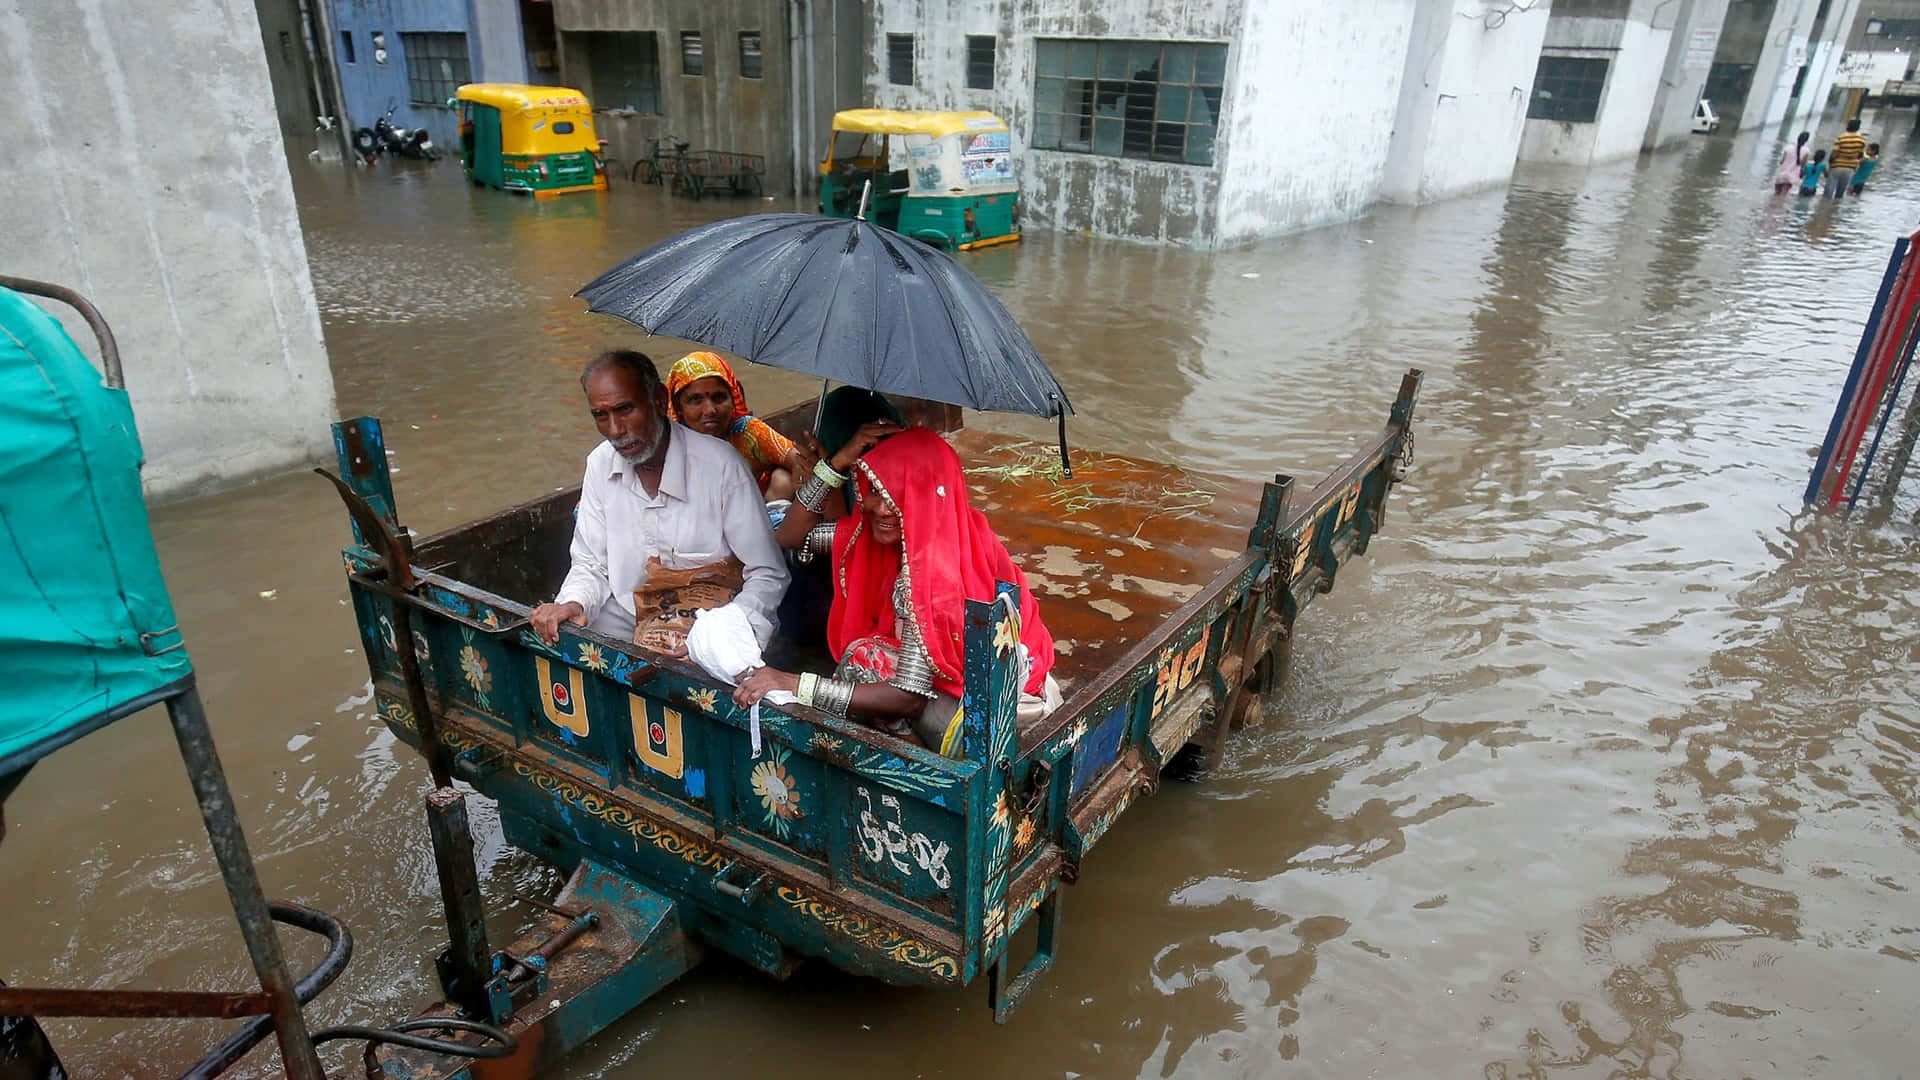 Situaciónde Inundación En Gujarat, India. Fondo de pantalla